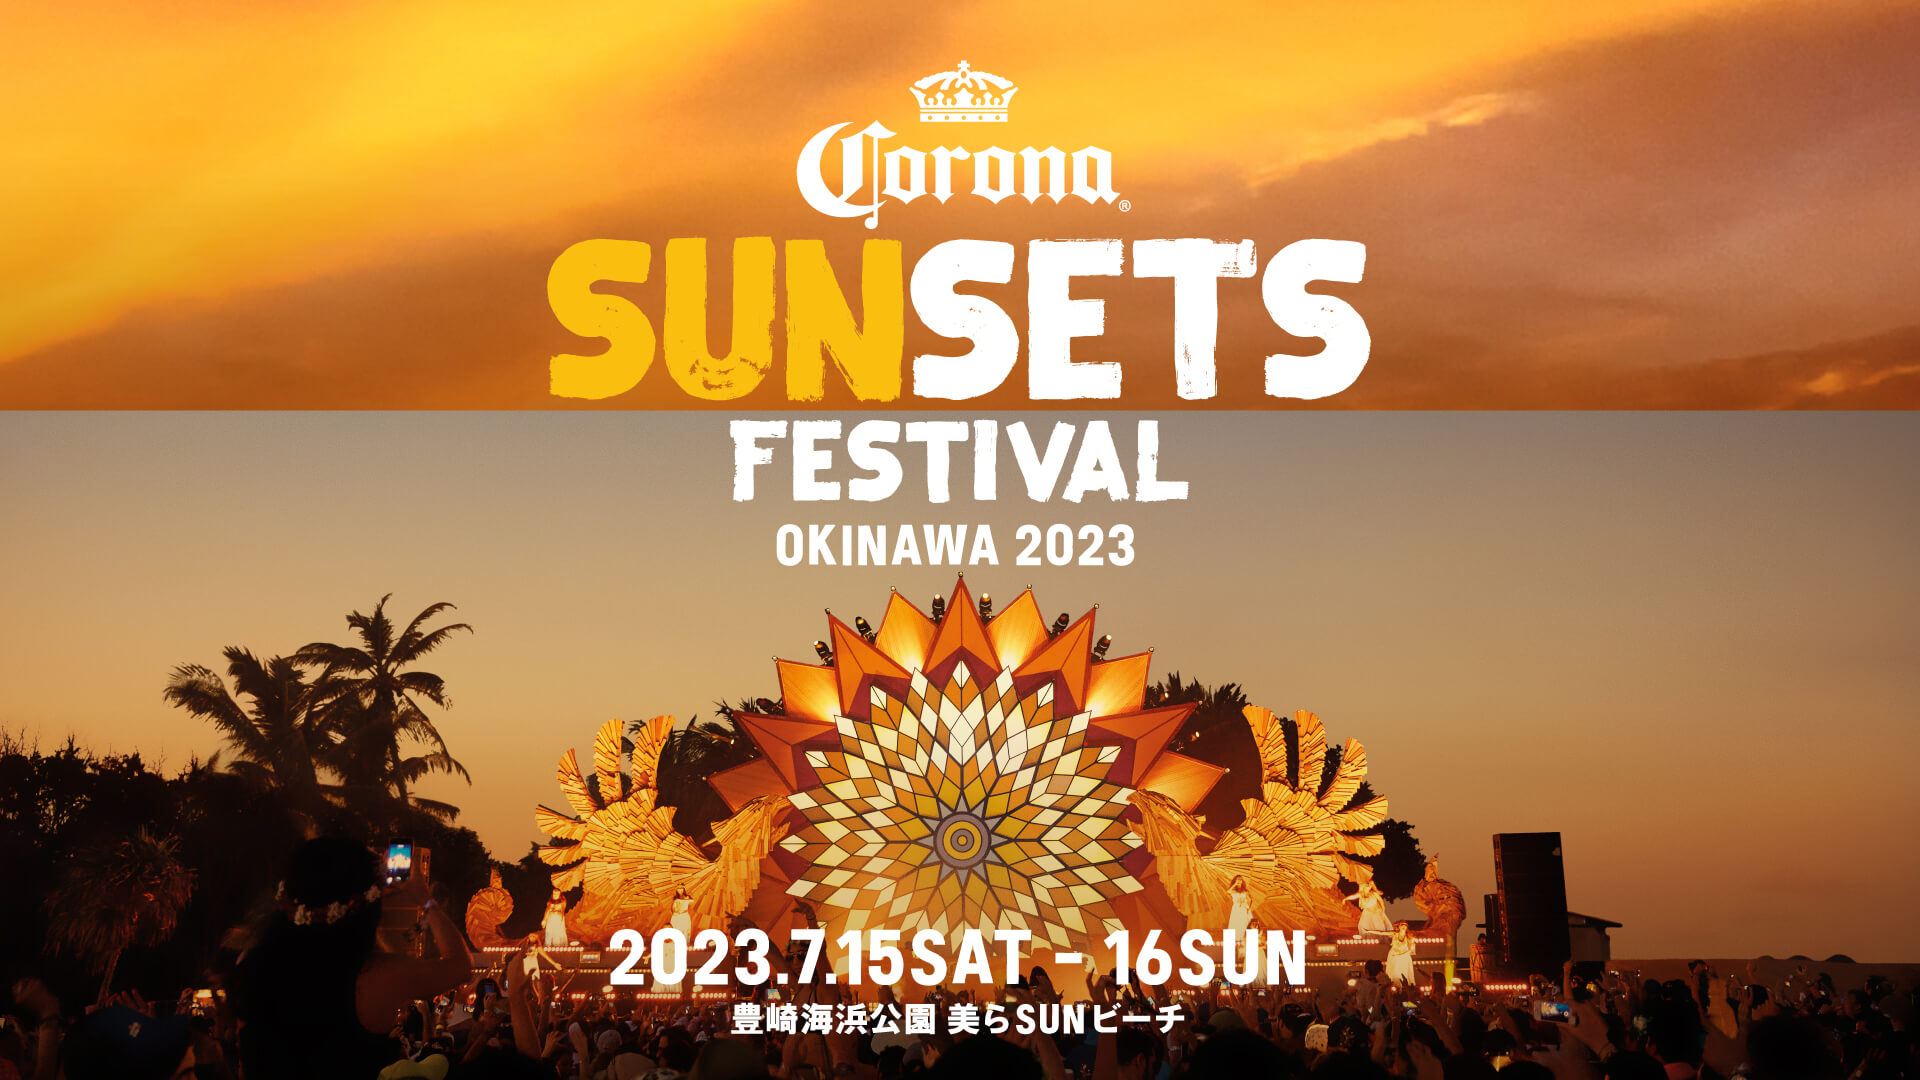 ＜CORONA SUNSETS FESTIVAL 2023＞に「TTNE」監修のフィランド式サウナなど、最高のサンセットタイムを満喫できるアクティビティが続々登場 music230425-corona-sunsets-festival3